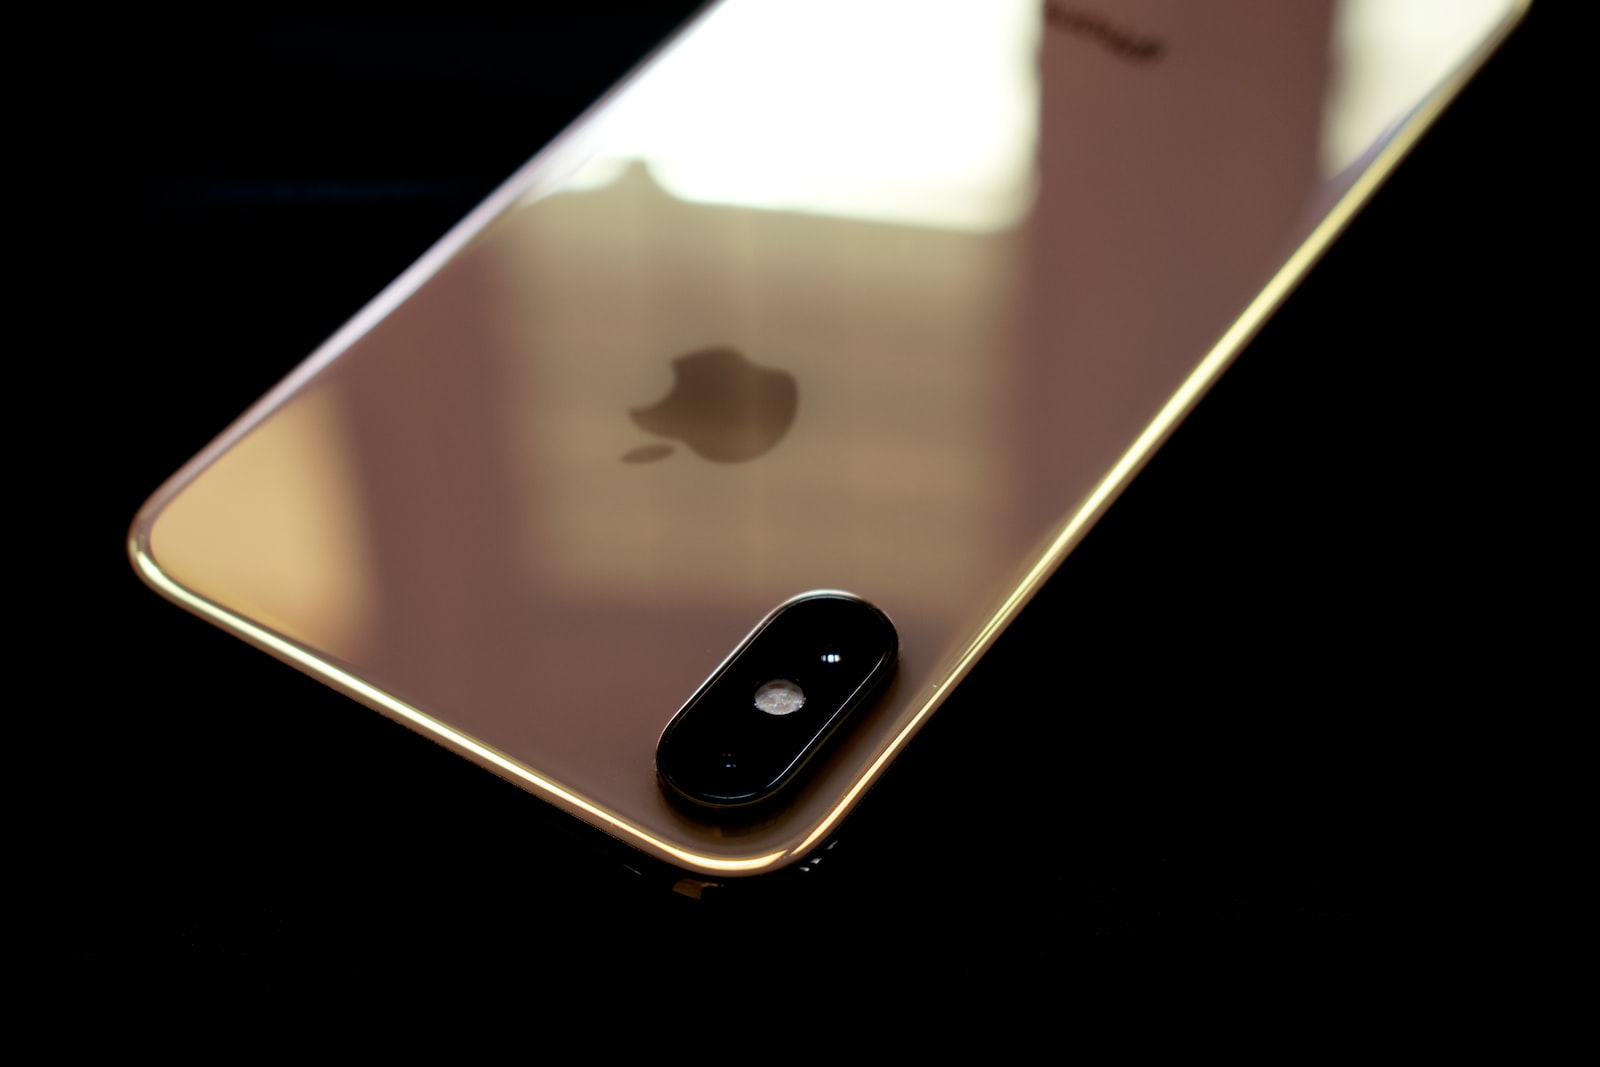 black iphone 4 on orange surface